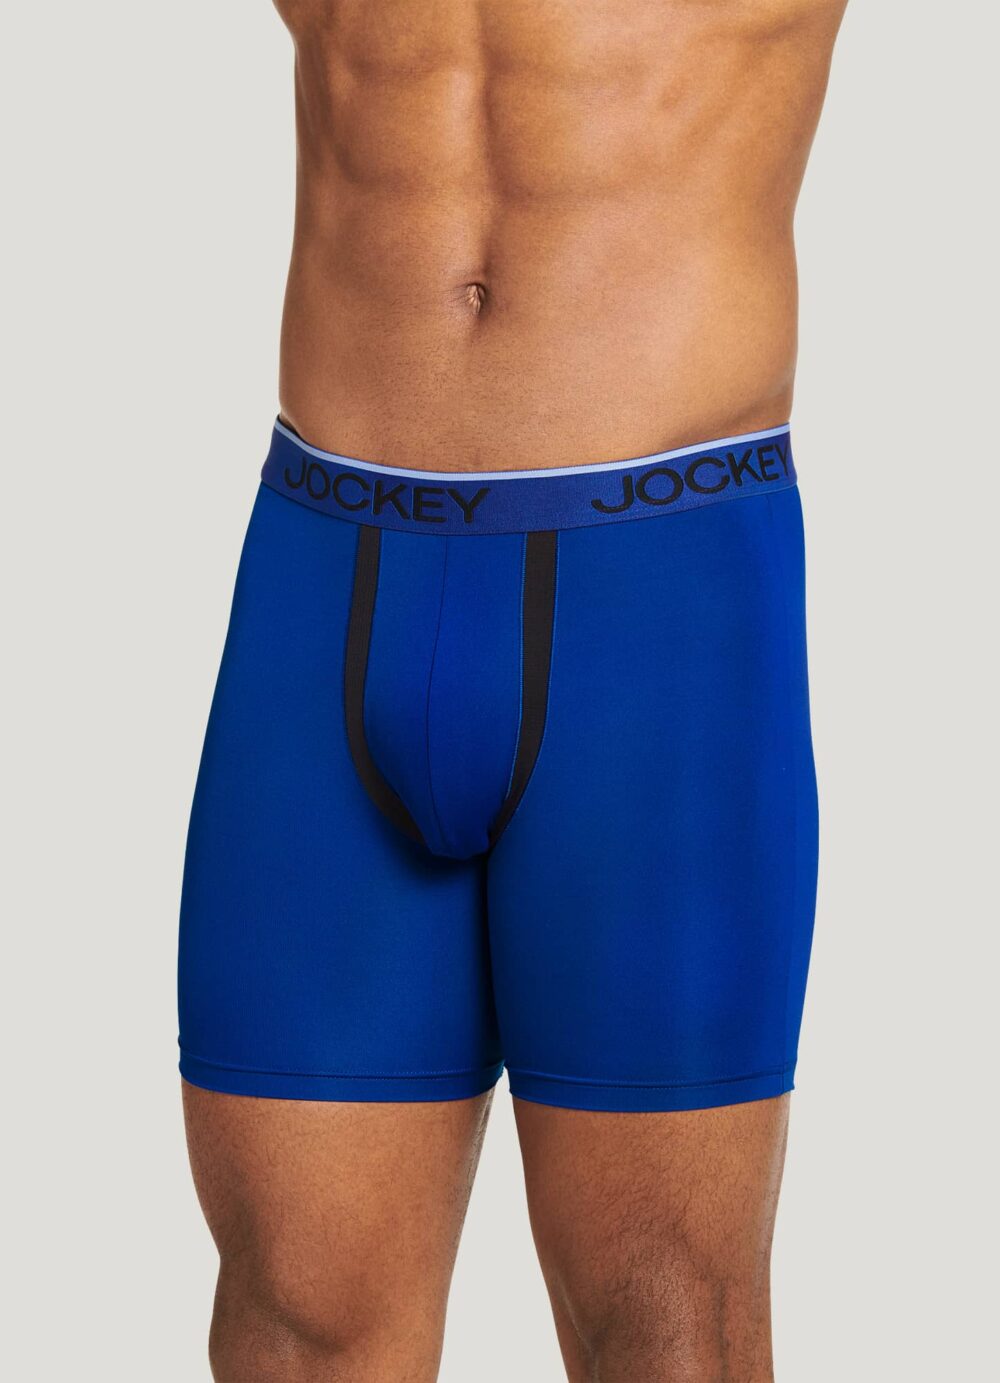 Jockey underwear for men, Jockey Briefs Review